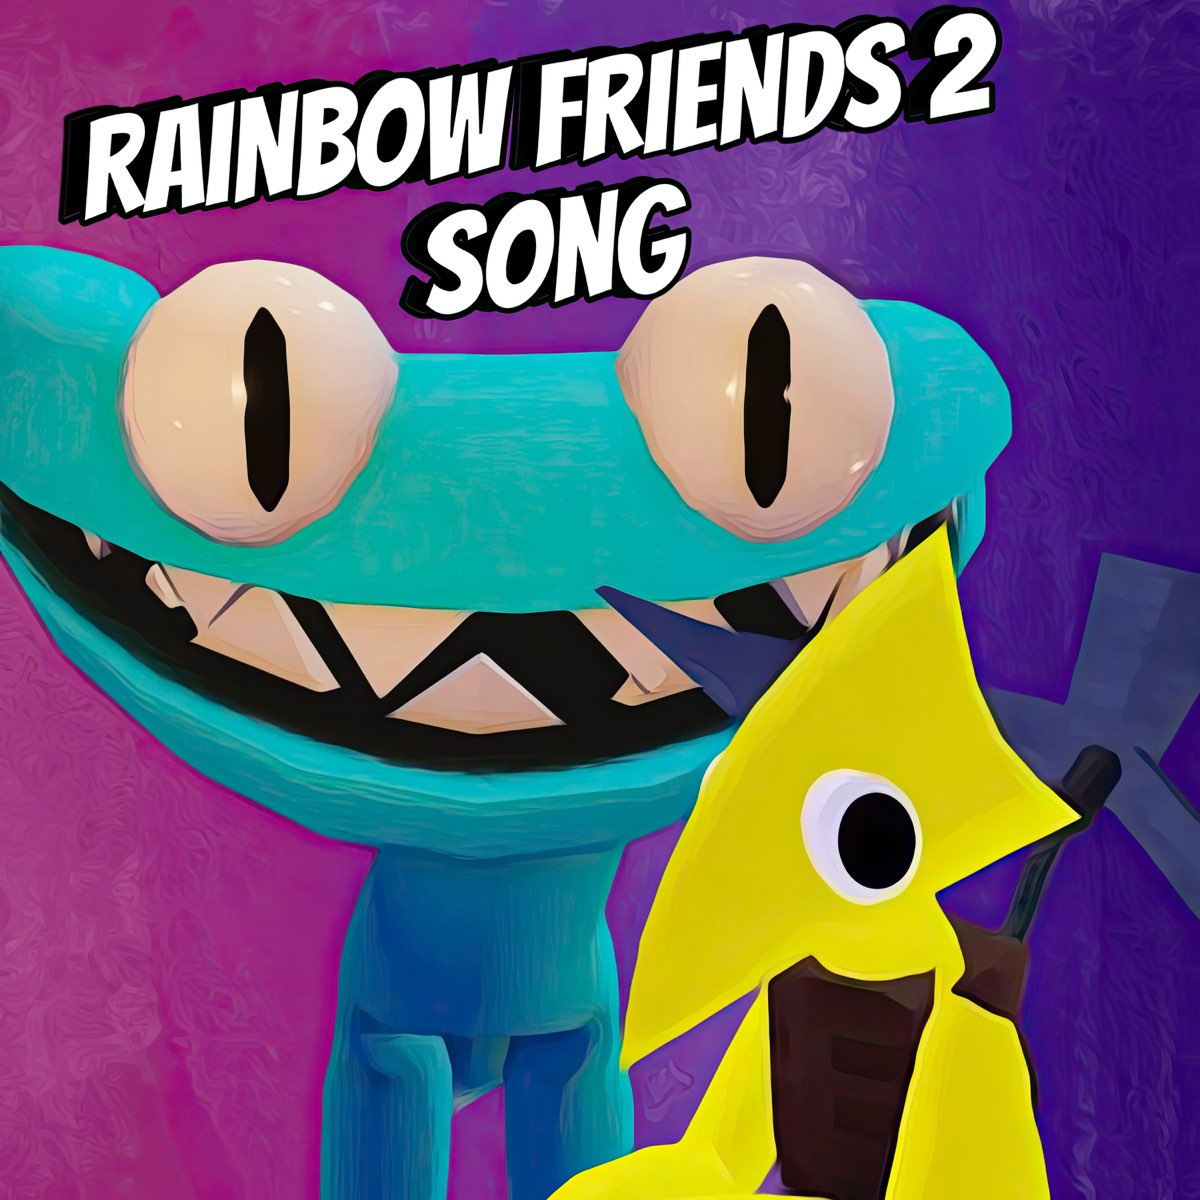 Blue x Green, Rainbow Friends vs GARTEN of BANBAN, Rainbow Friends 2